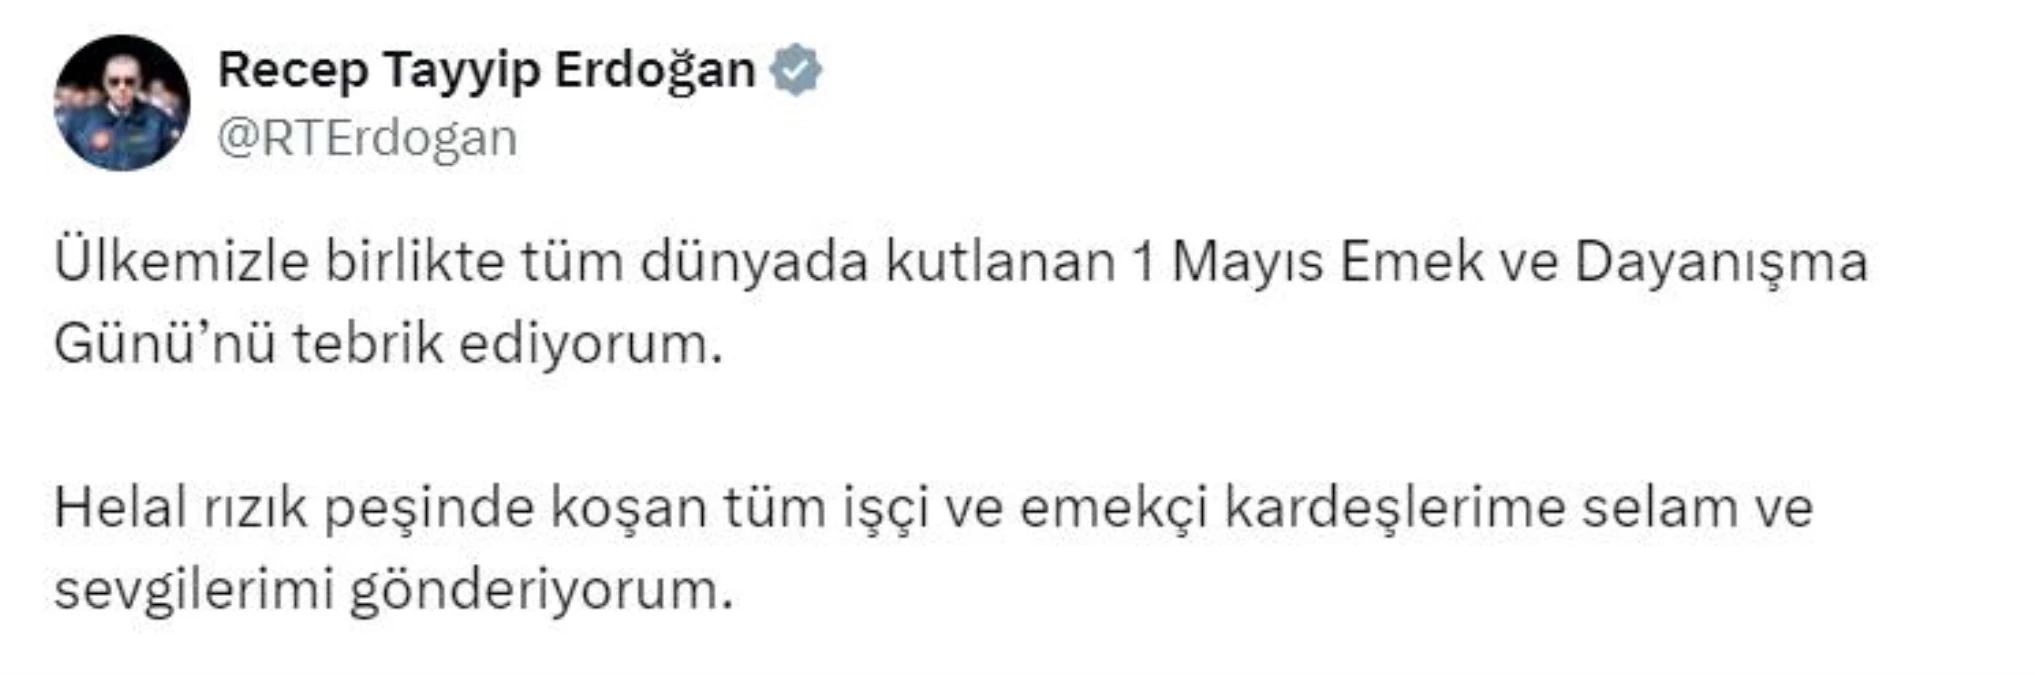 Cumhurbaşkanı Recep Tayyip Erdoğan, 1 Mayıs Emek ve Dayanışma Günü\'nü kutladı